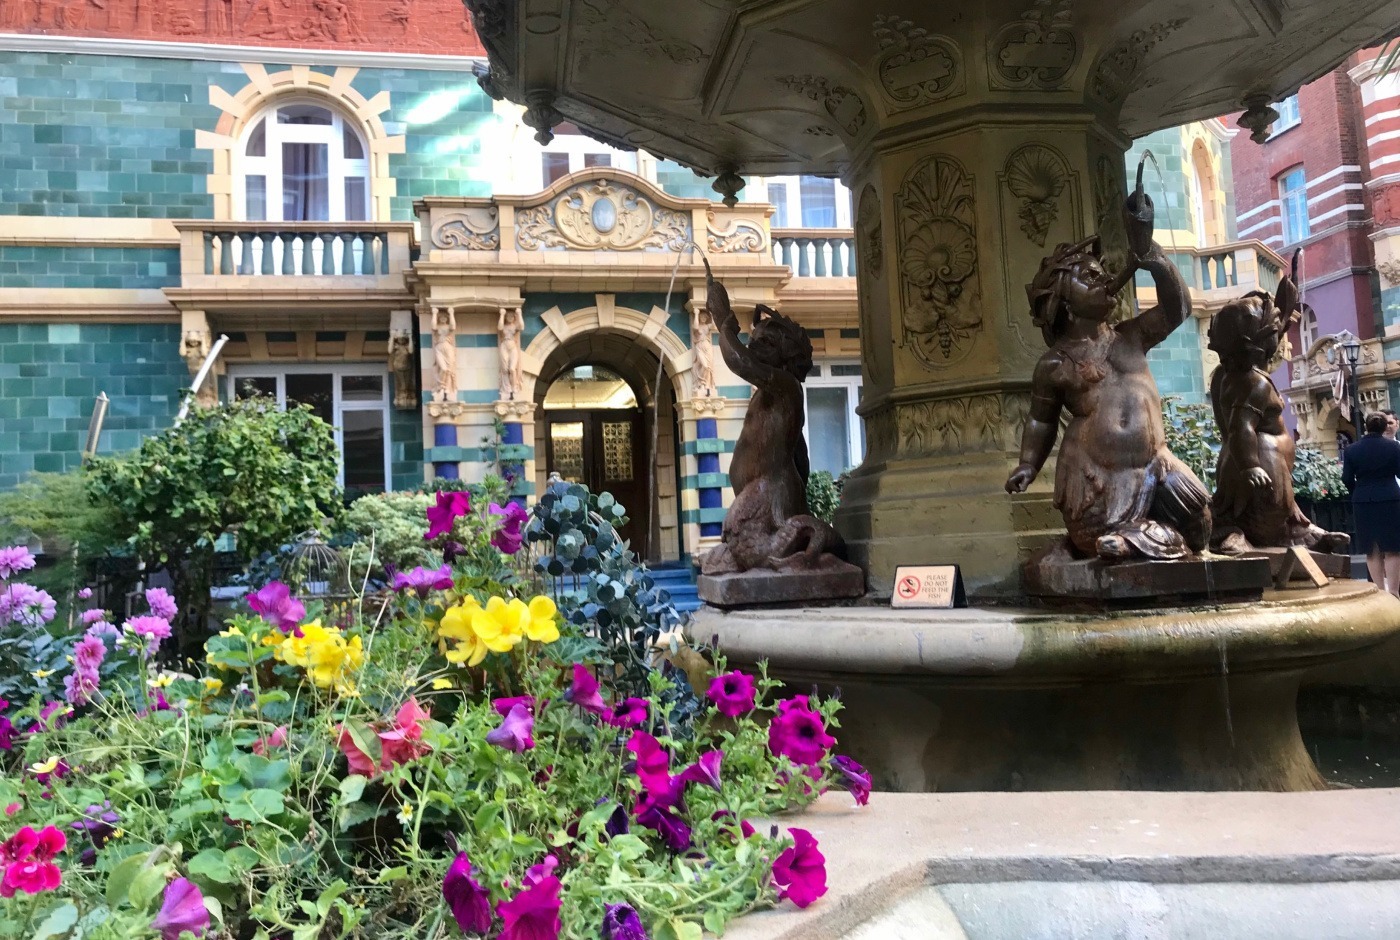 Jardim colorido em estilo vitoriano com anjinhos na fonte, do hotel Taj em Londres